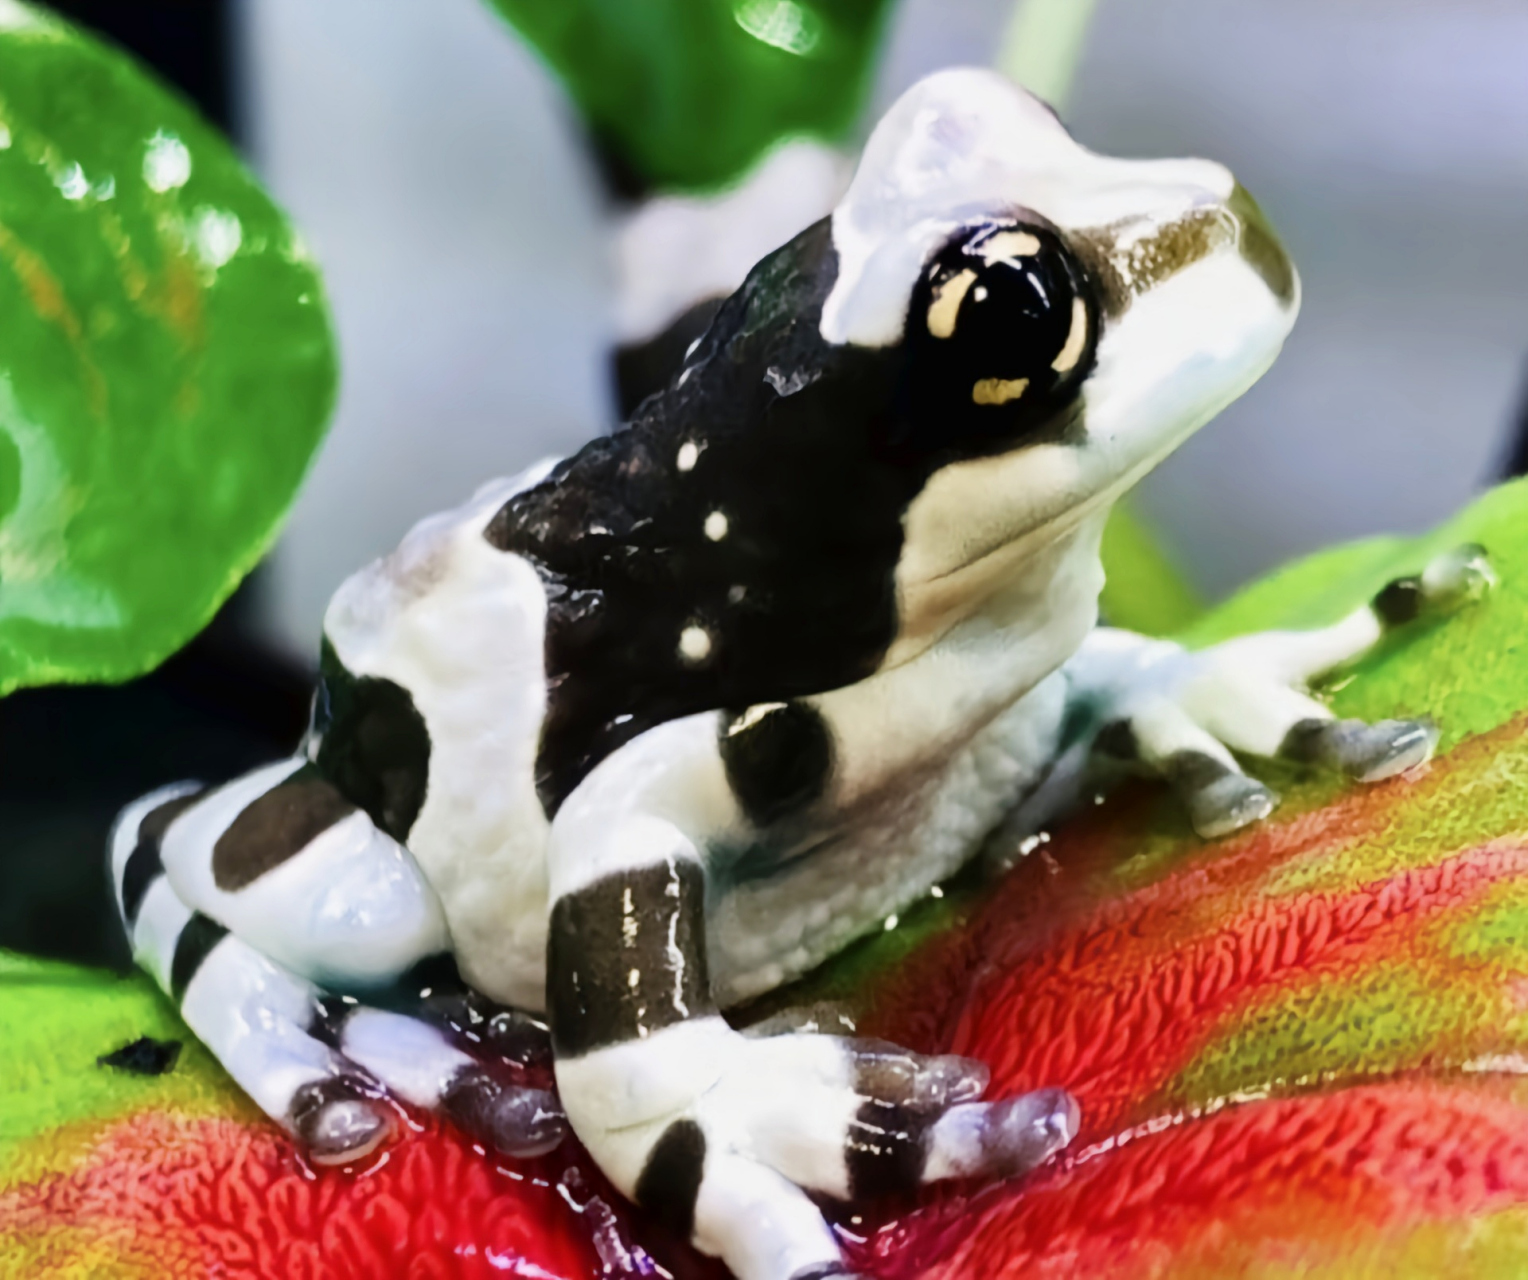 每天认识一种动物——牛奶树蛙 牛奶树蛙别名亚马逊牛奶蛙,原产南美洲